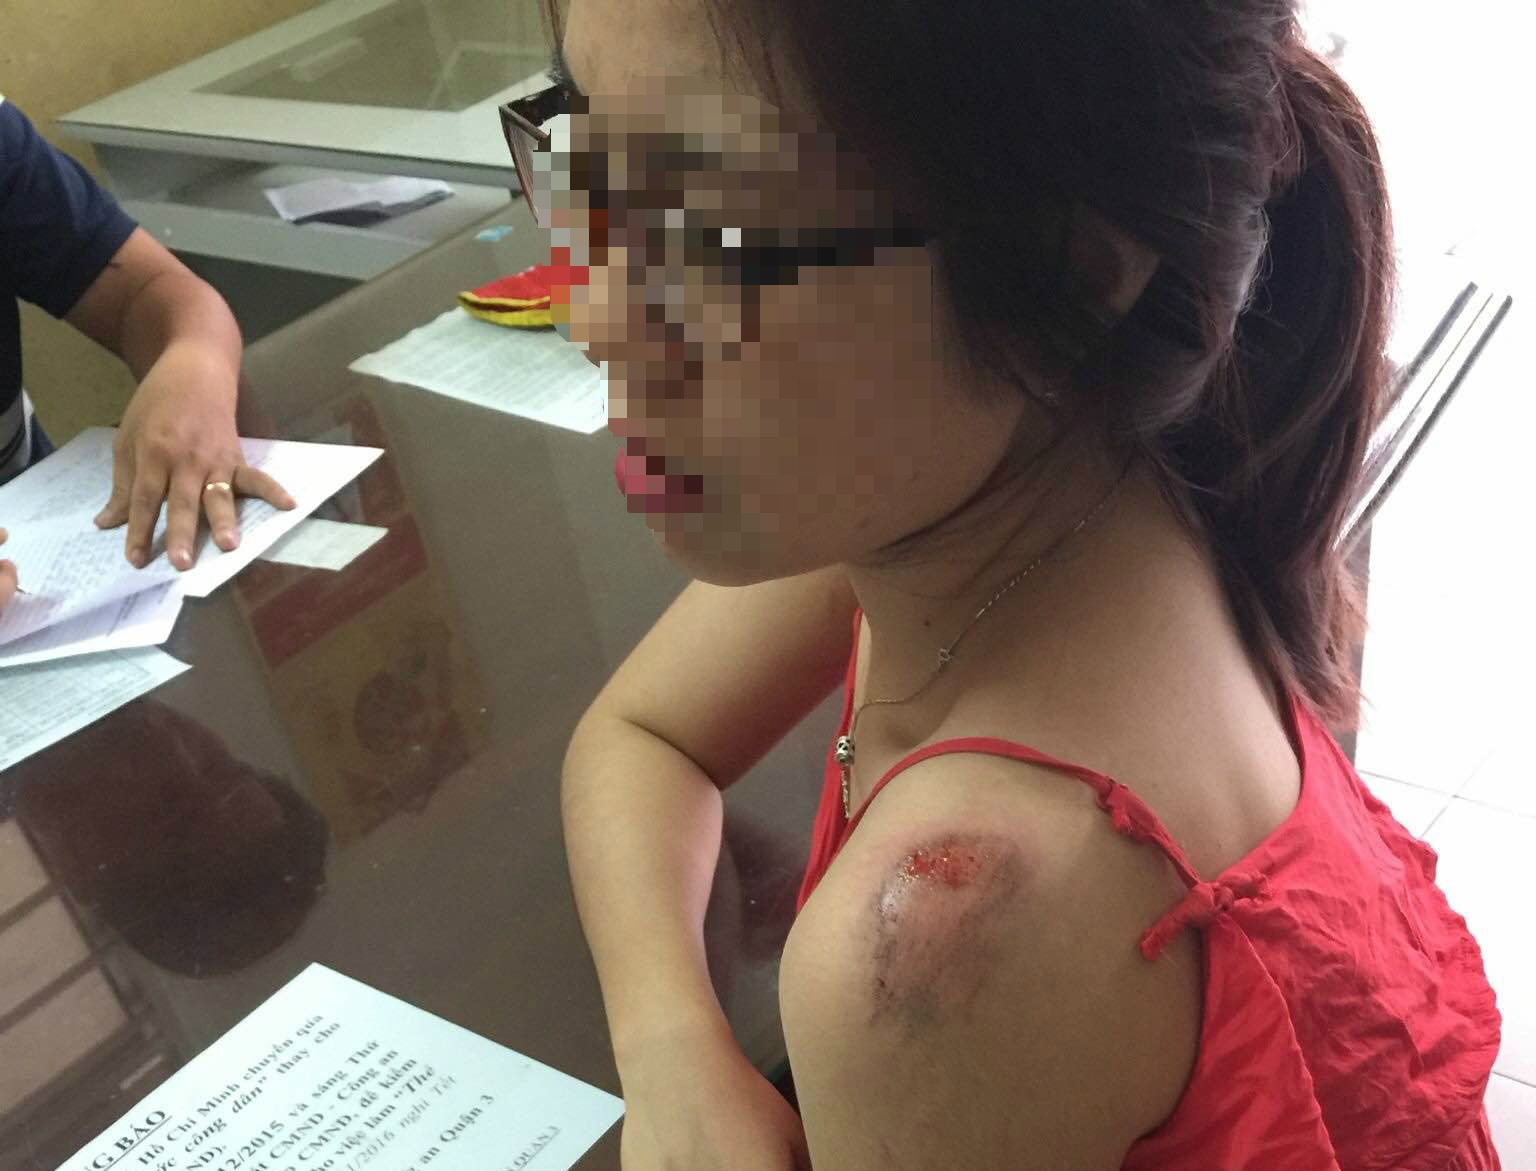 HÌnh ảnh người bị trầy xước được chia sẻ trên mạng xã hội - Ảnh: Facebook Hoa Dai